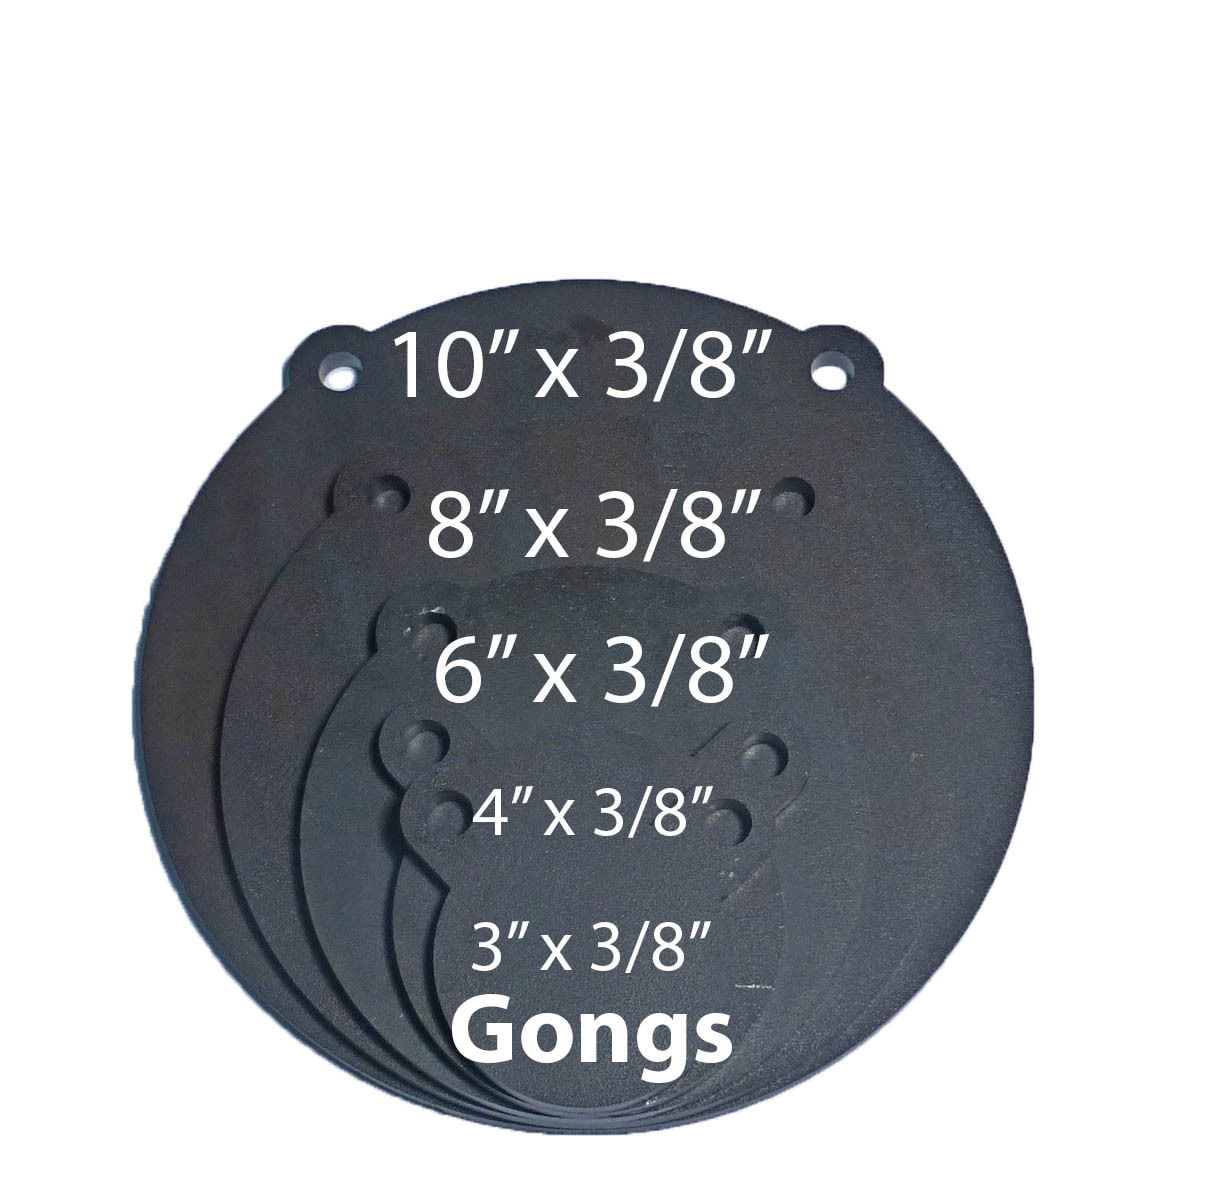 Set of 4 AR500 Steel Target Gong 1/2" x 4" Painted Black Shooting Practice Range 